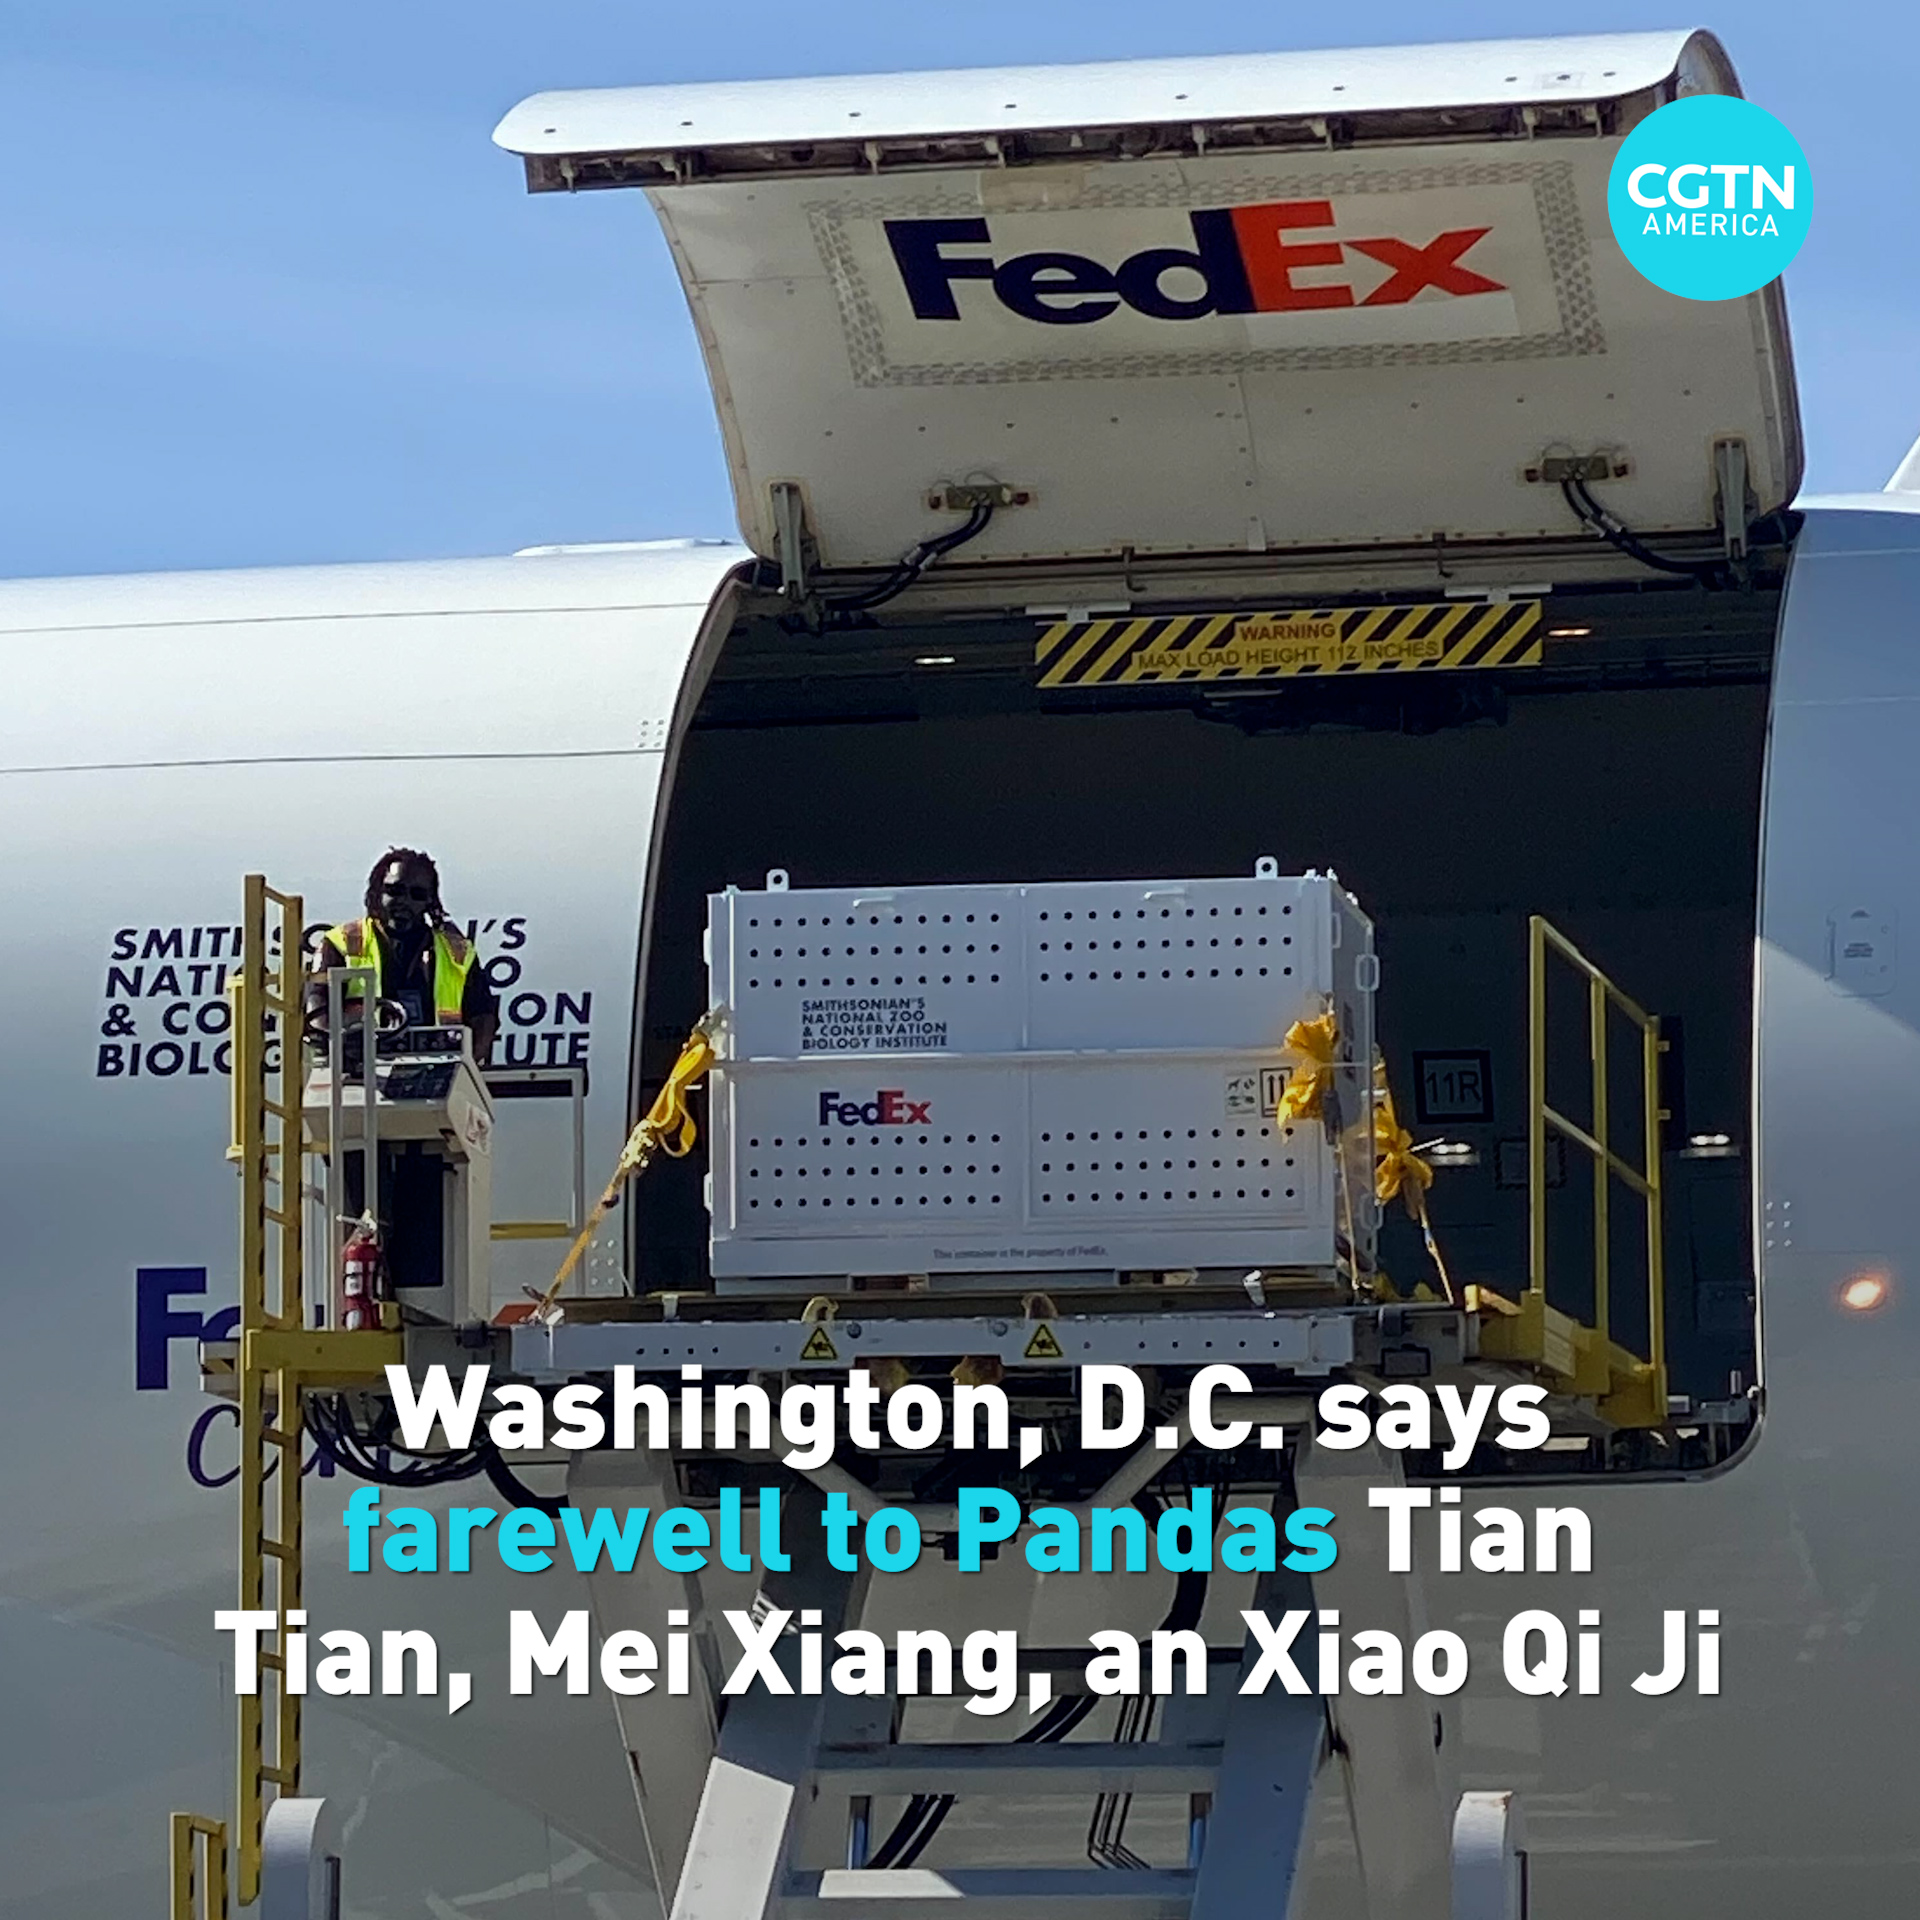 Washington, D.C. says farewell to Giant Pandas